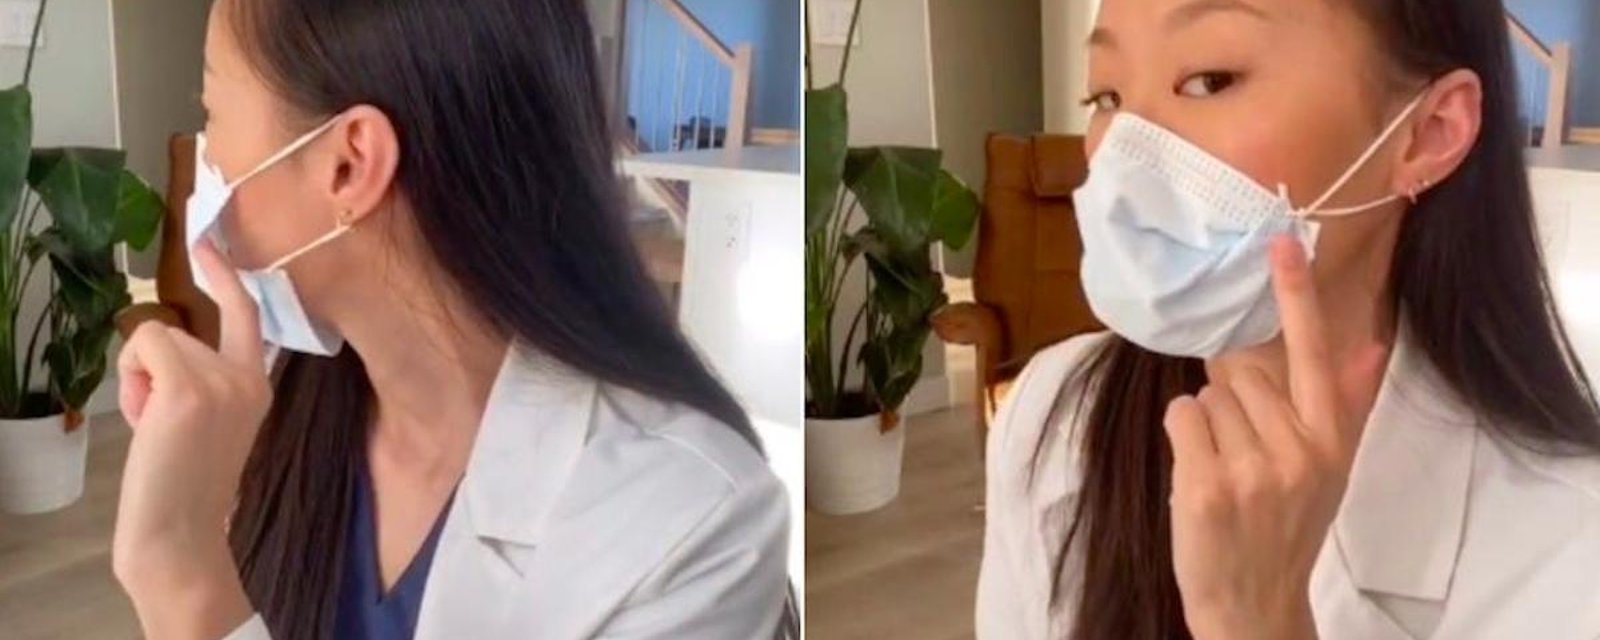 L’astuce ingénieuse d'une dentiste canadienne pour améliorer l'ajustement d'un masque facial a été vue plus de 3 000 000 de fois sur TikTok